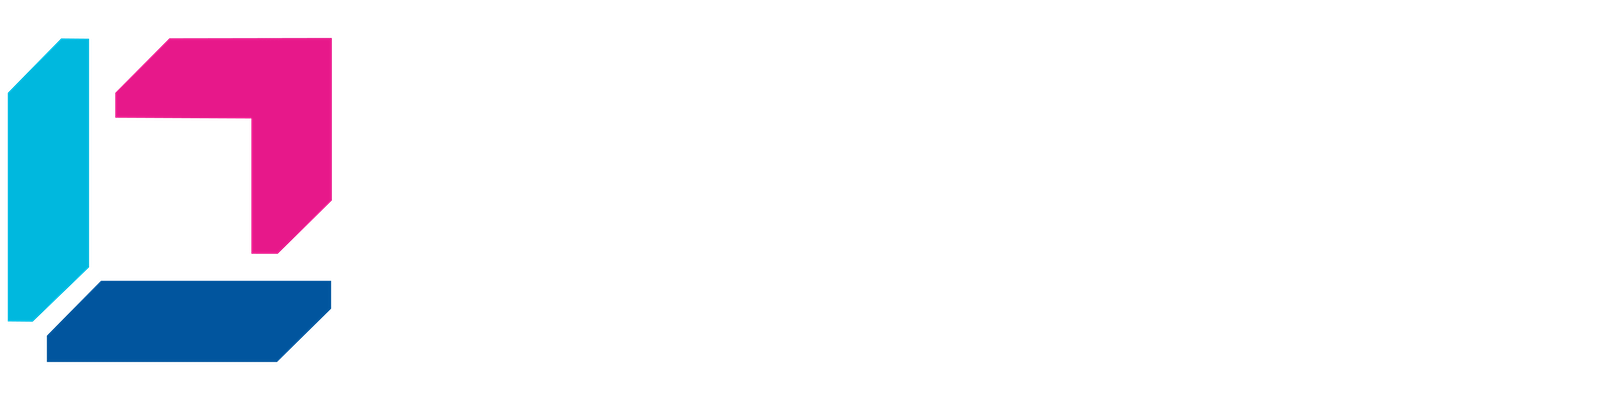 Leanna logo